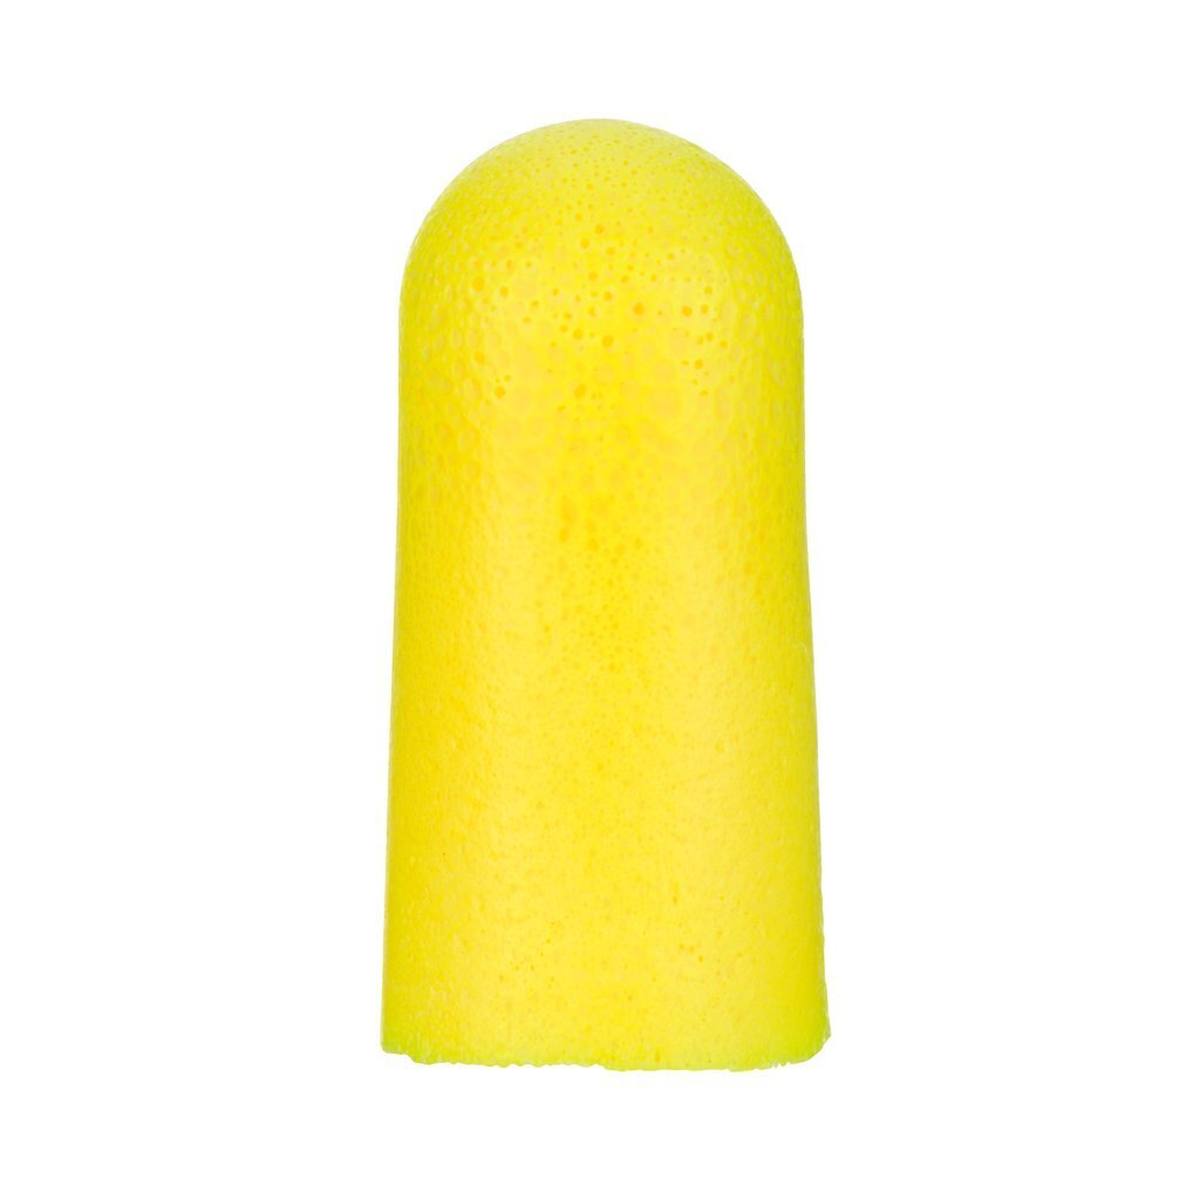 3M E-A-R Sacchetto di ricarica giallo neon morbido (per riempire l'attacco di ricarica) per Dispenser OneTouch Pro, SNR=36 dB PD01010